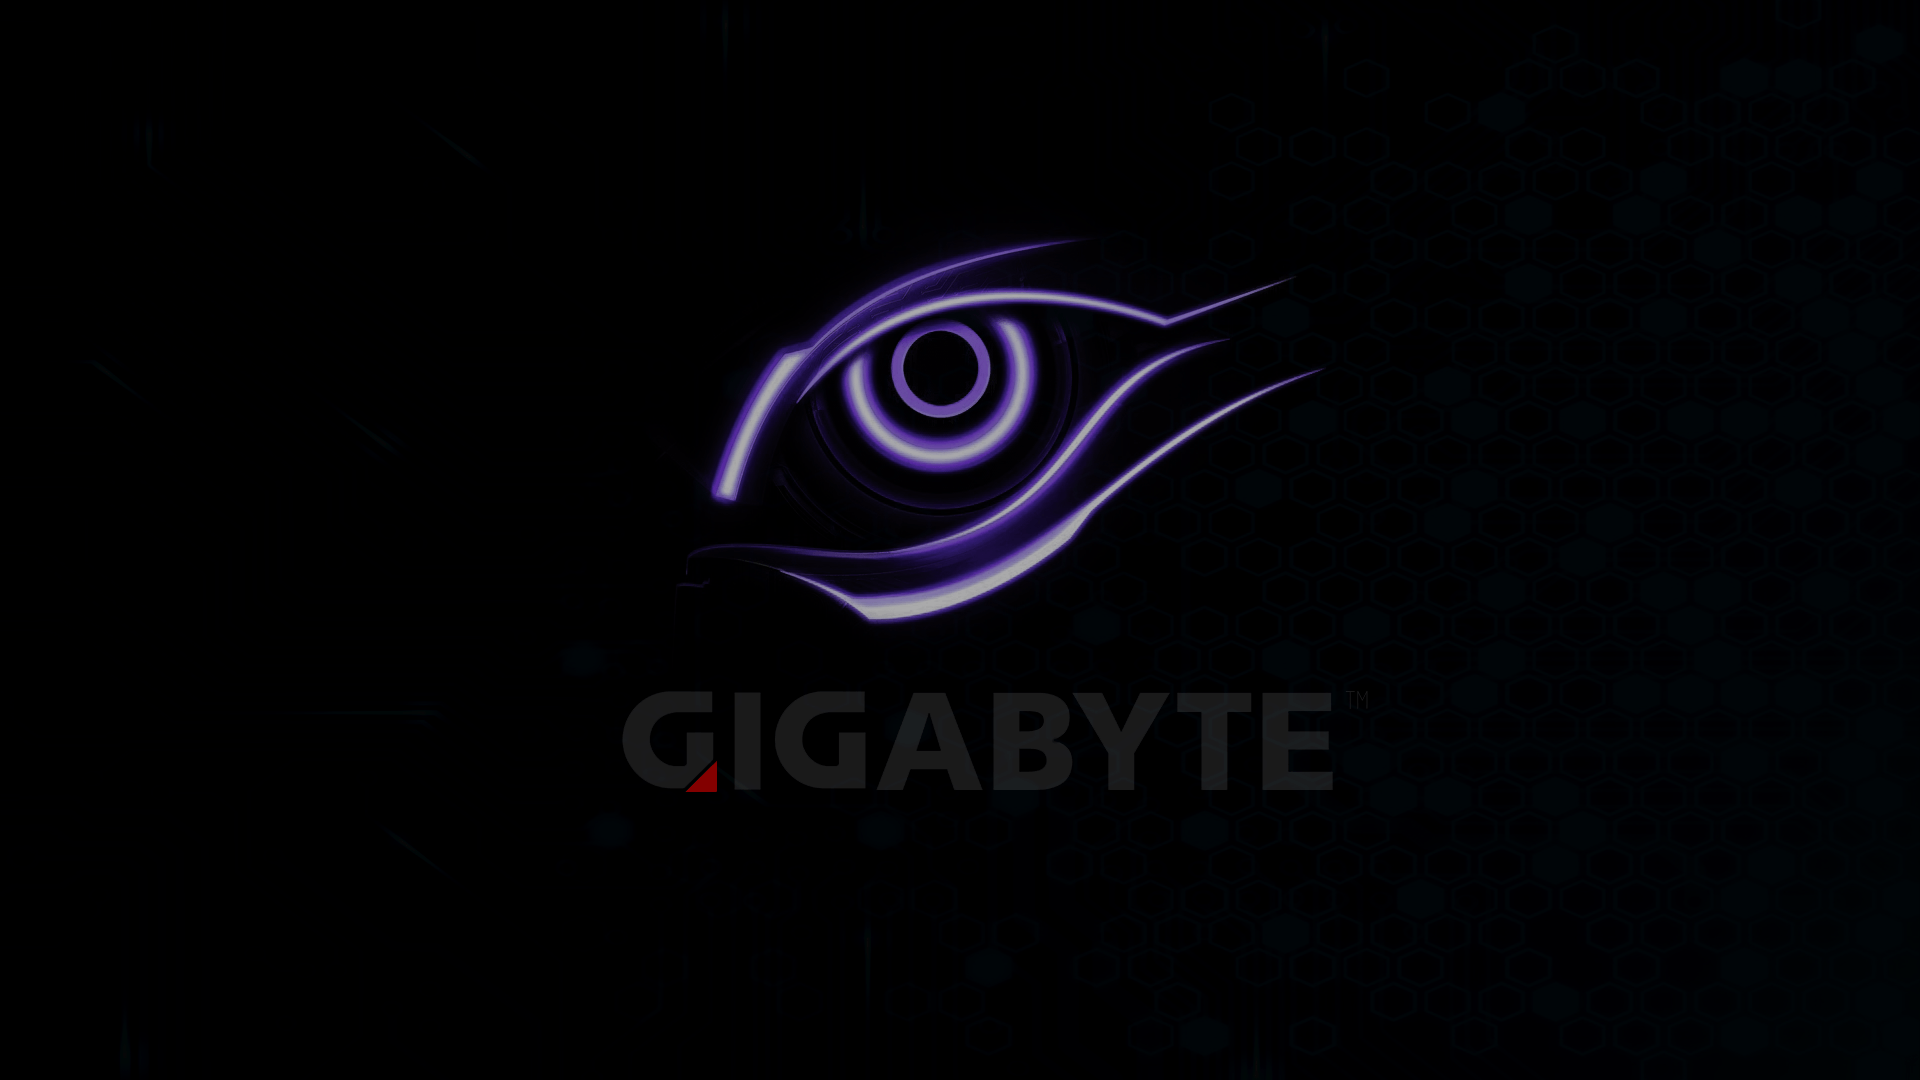 Gigabyte Wallpaper. Gigabyte Gaming